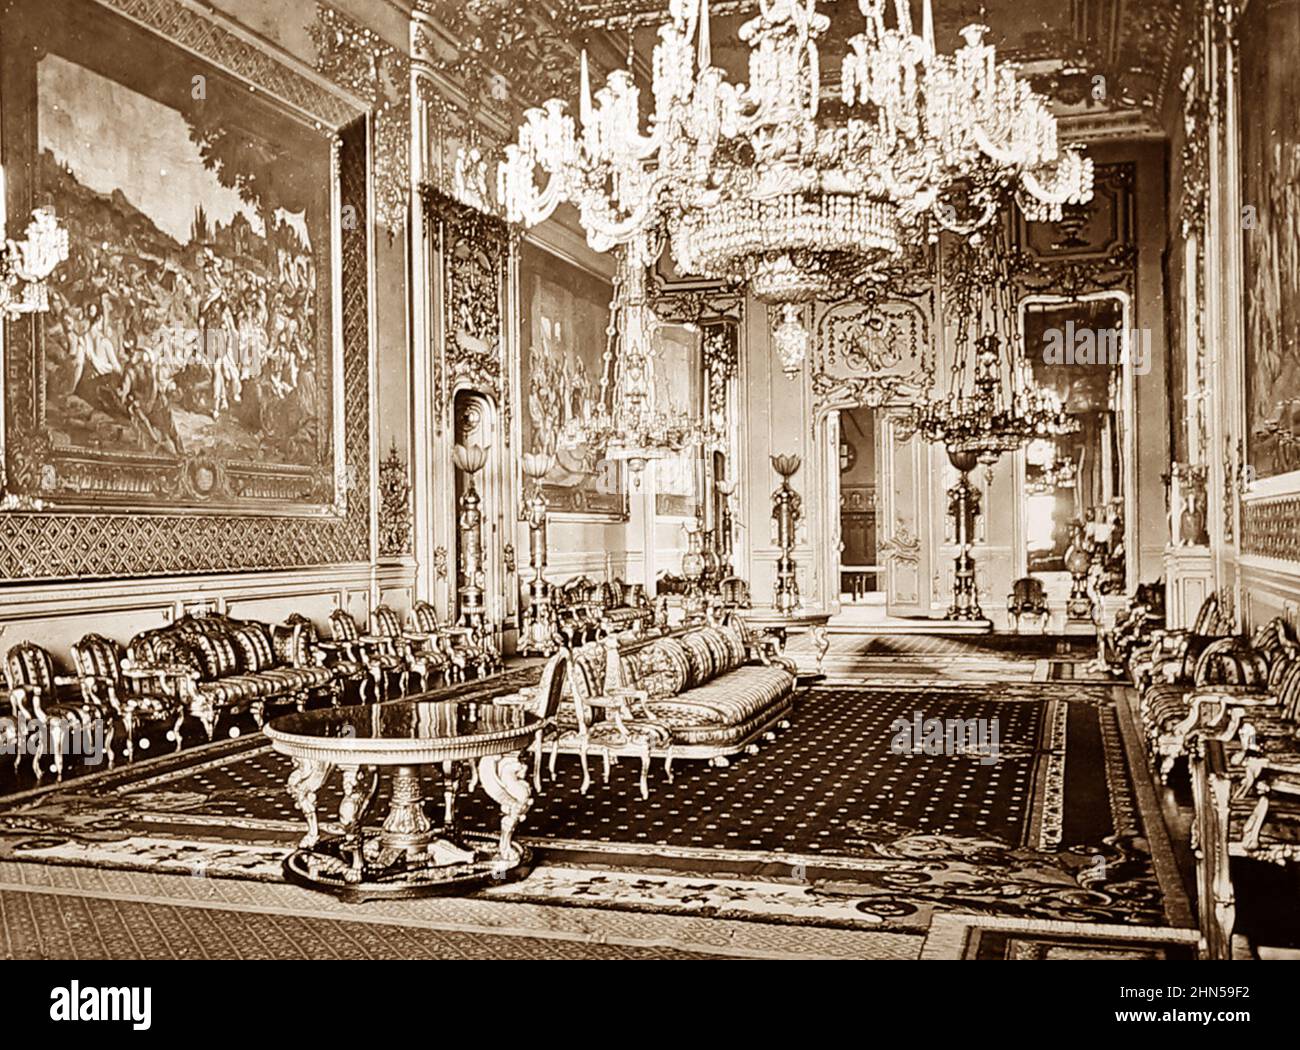 Grande salle de réception, château de Windsor, époque victorienne Banque D'Images